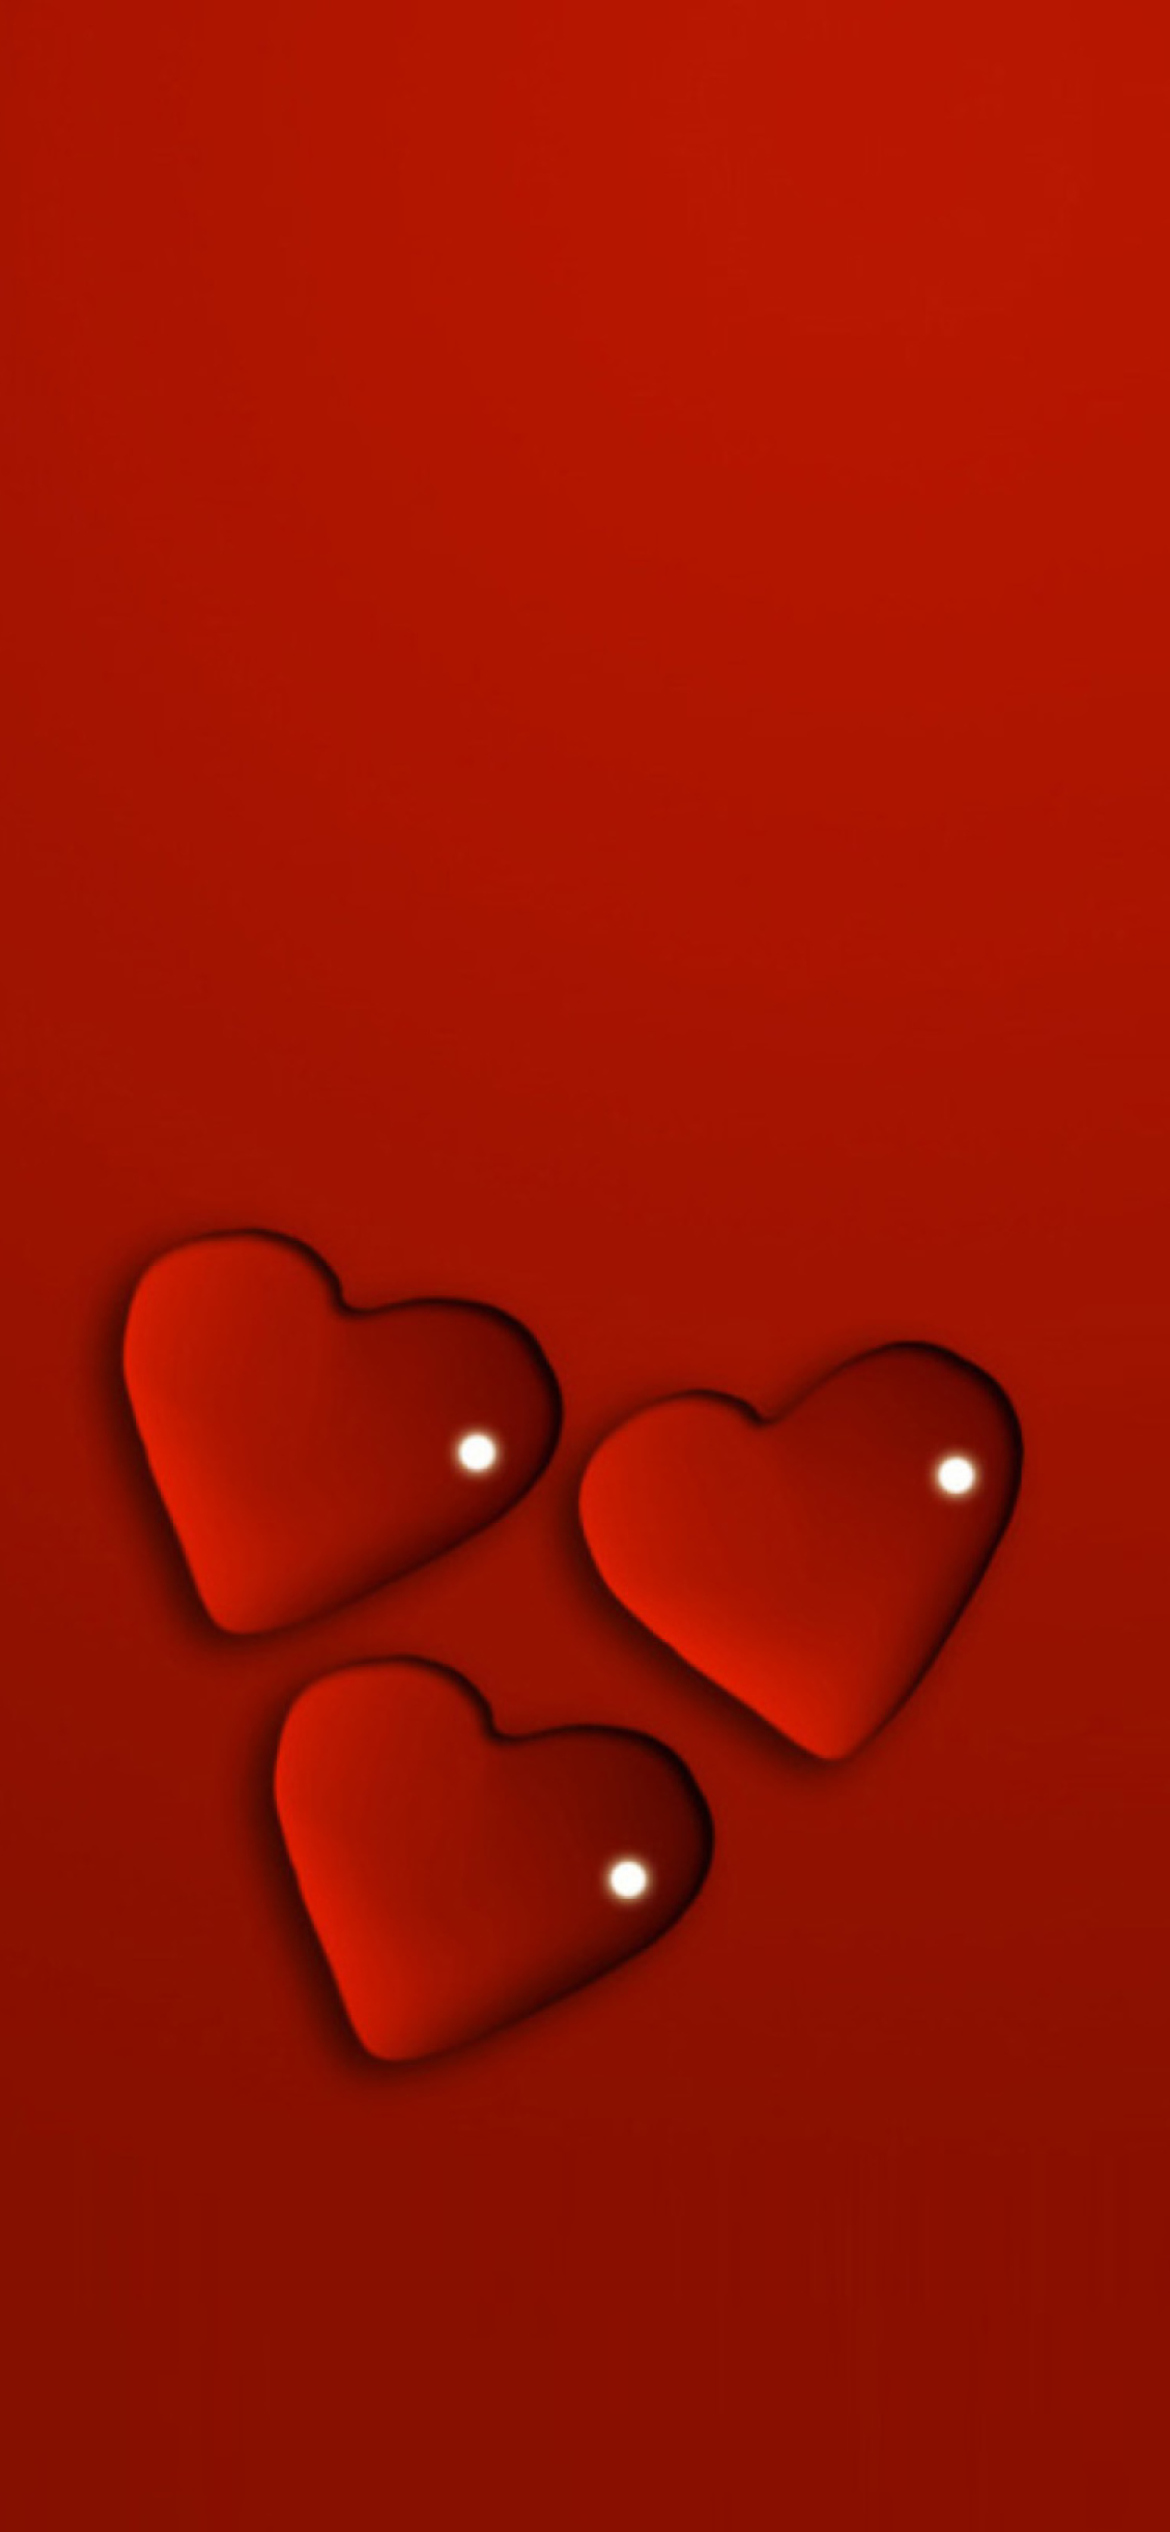 Jelly Hearts wallpaper 1170x2532